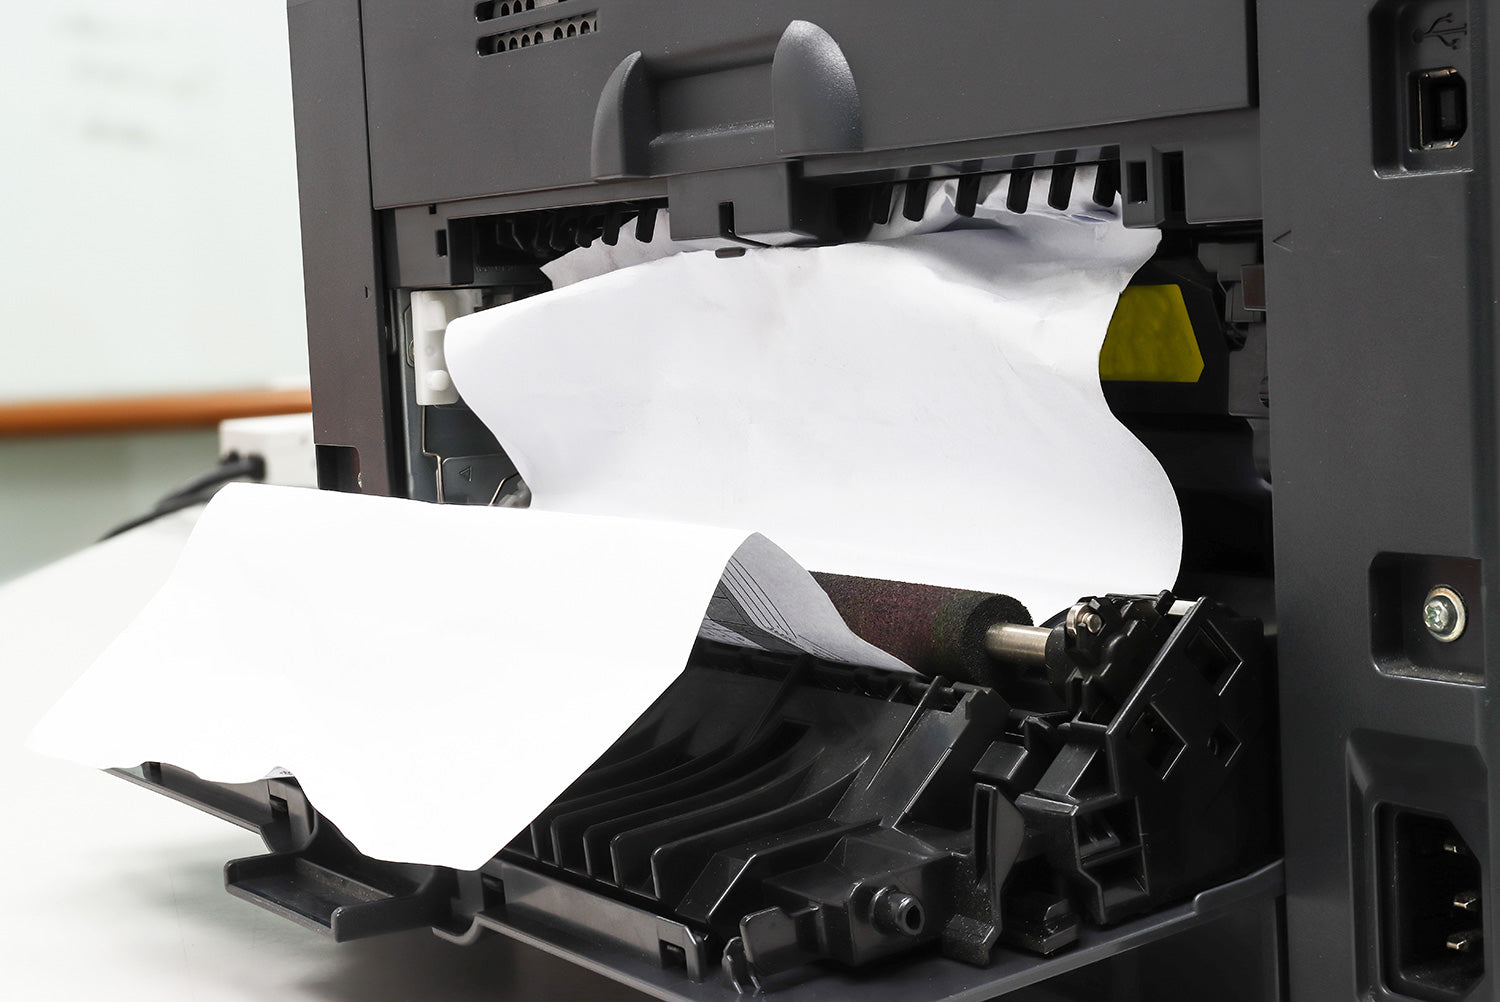 Paper jam in a printer